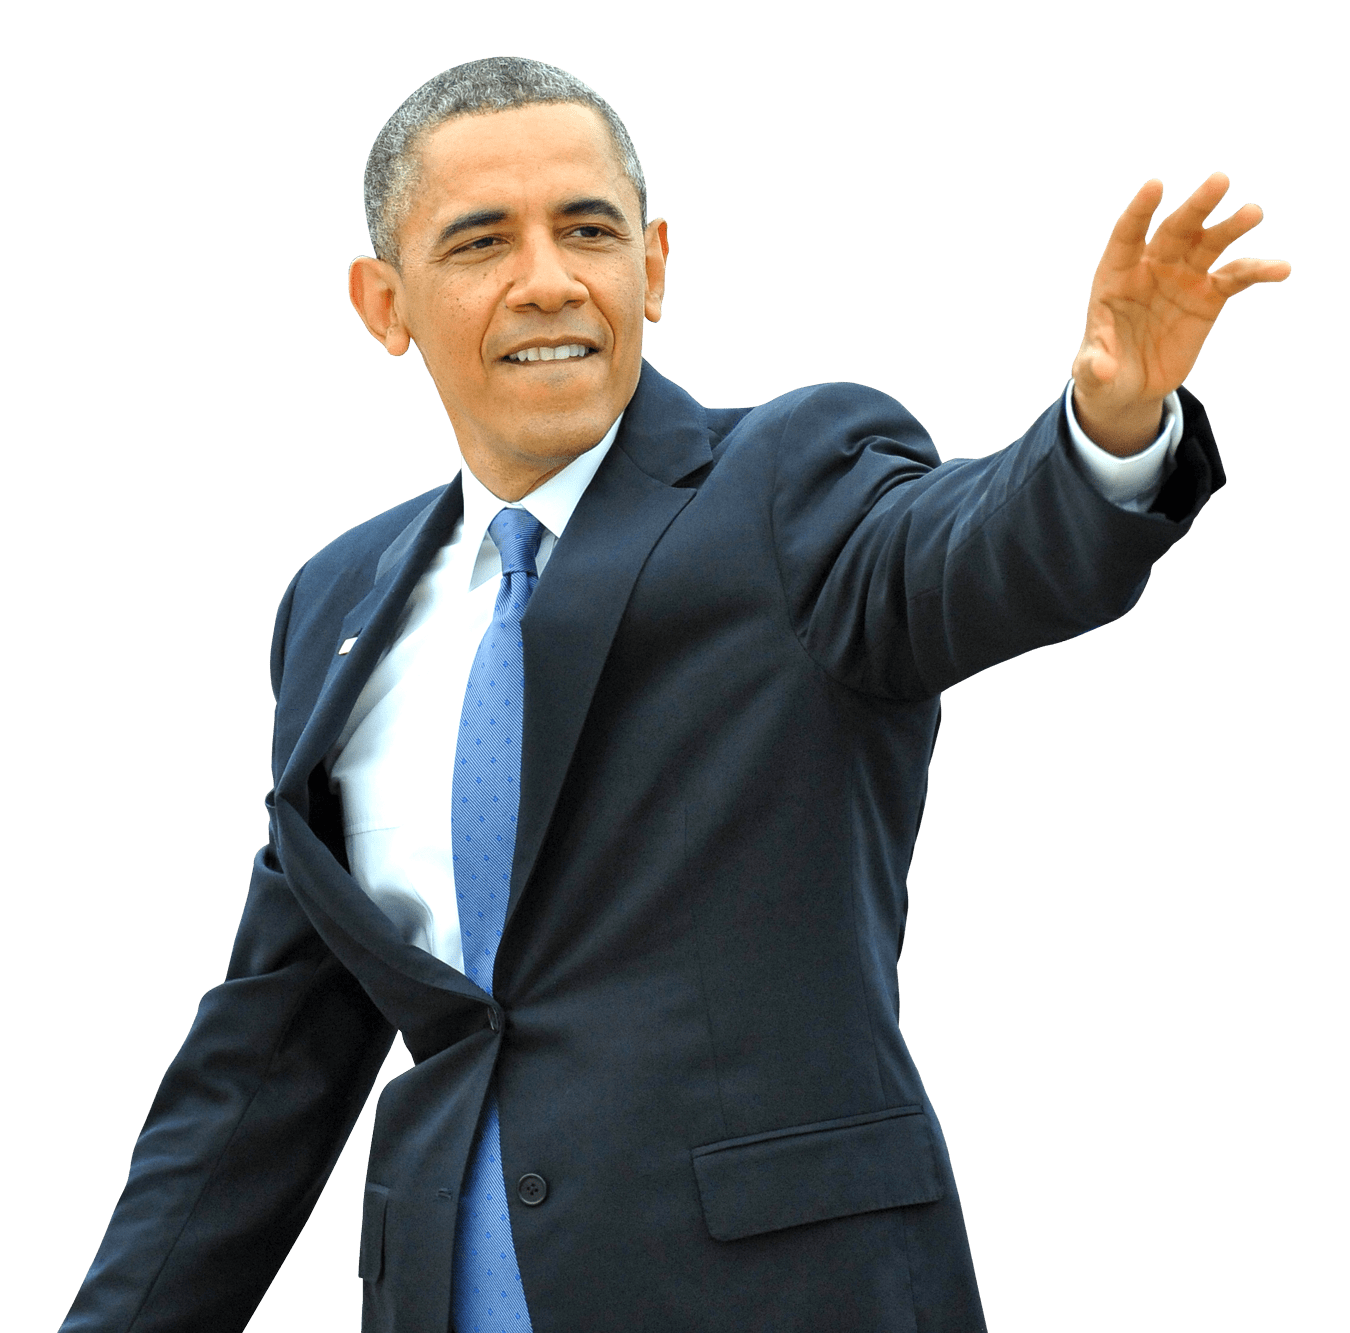 Barack Obama PNG images 